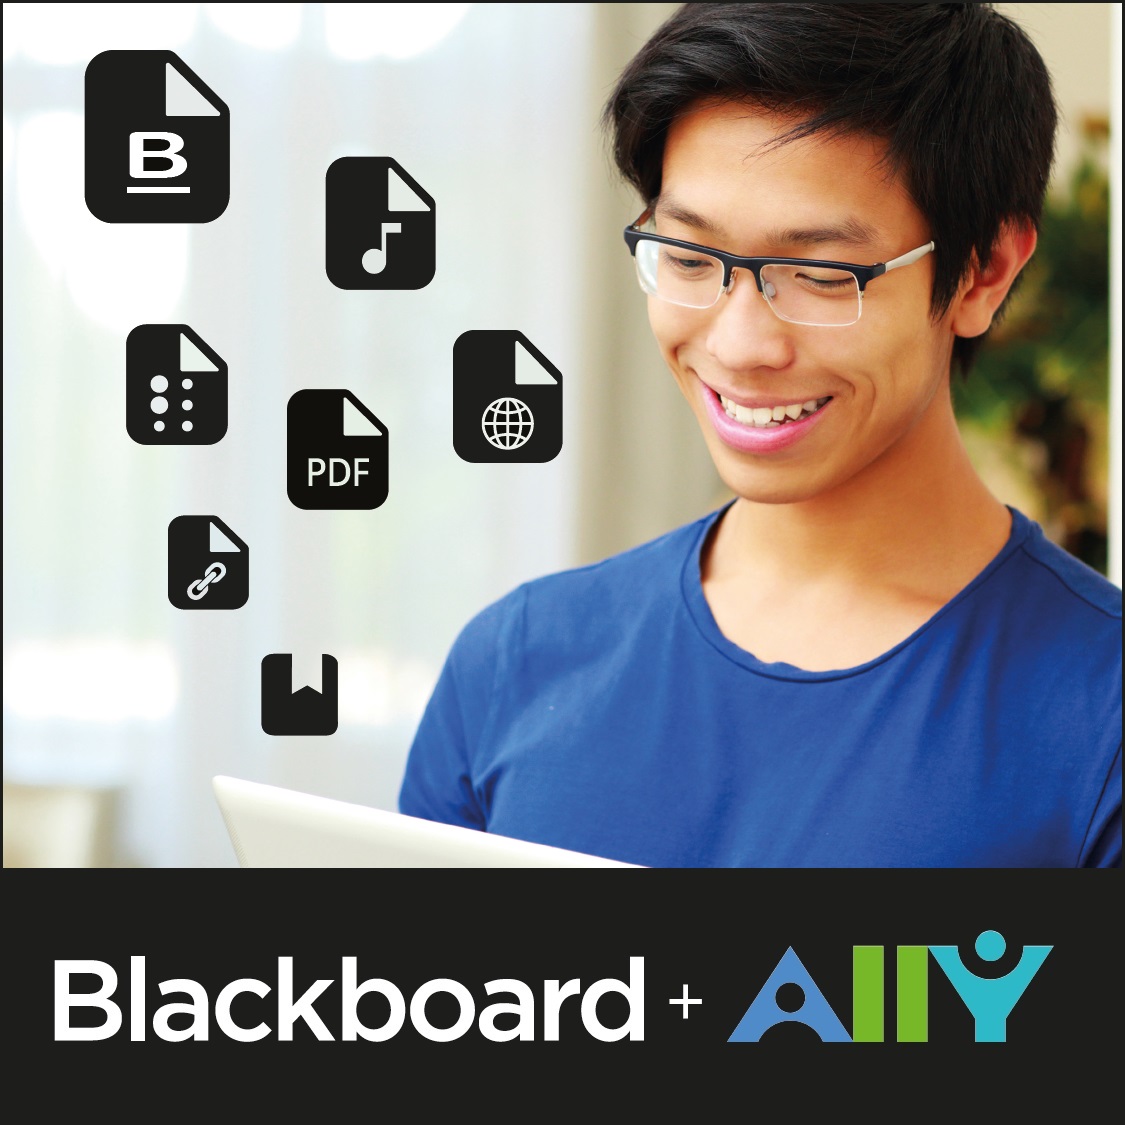 En gutt som ser på PC-skjermen sin og smiler. I lufta rundt ham er det logoer som representerer ulike filformat. Nederst i bildet står det Blackboard Ally.